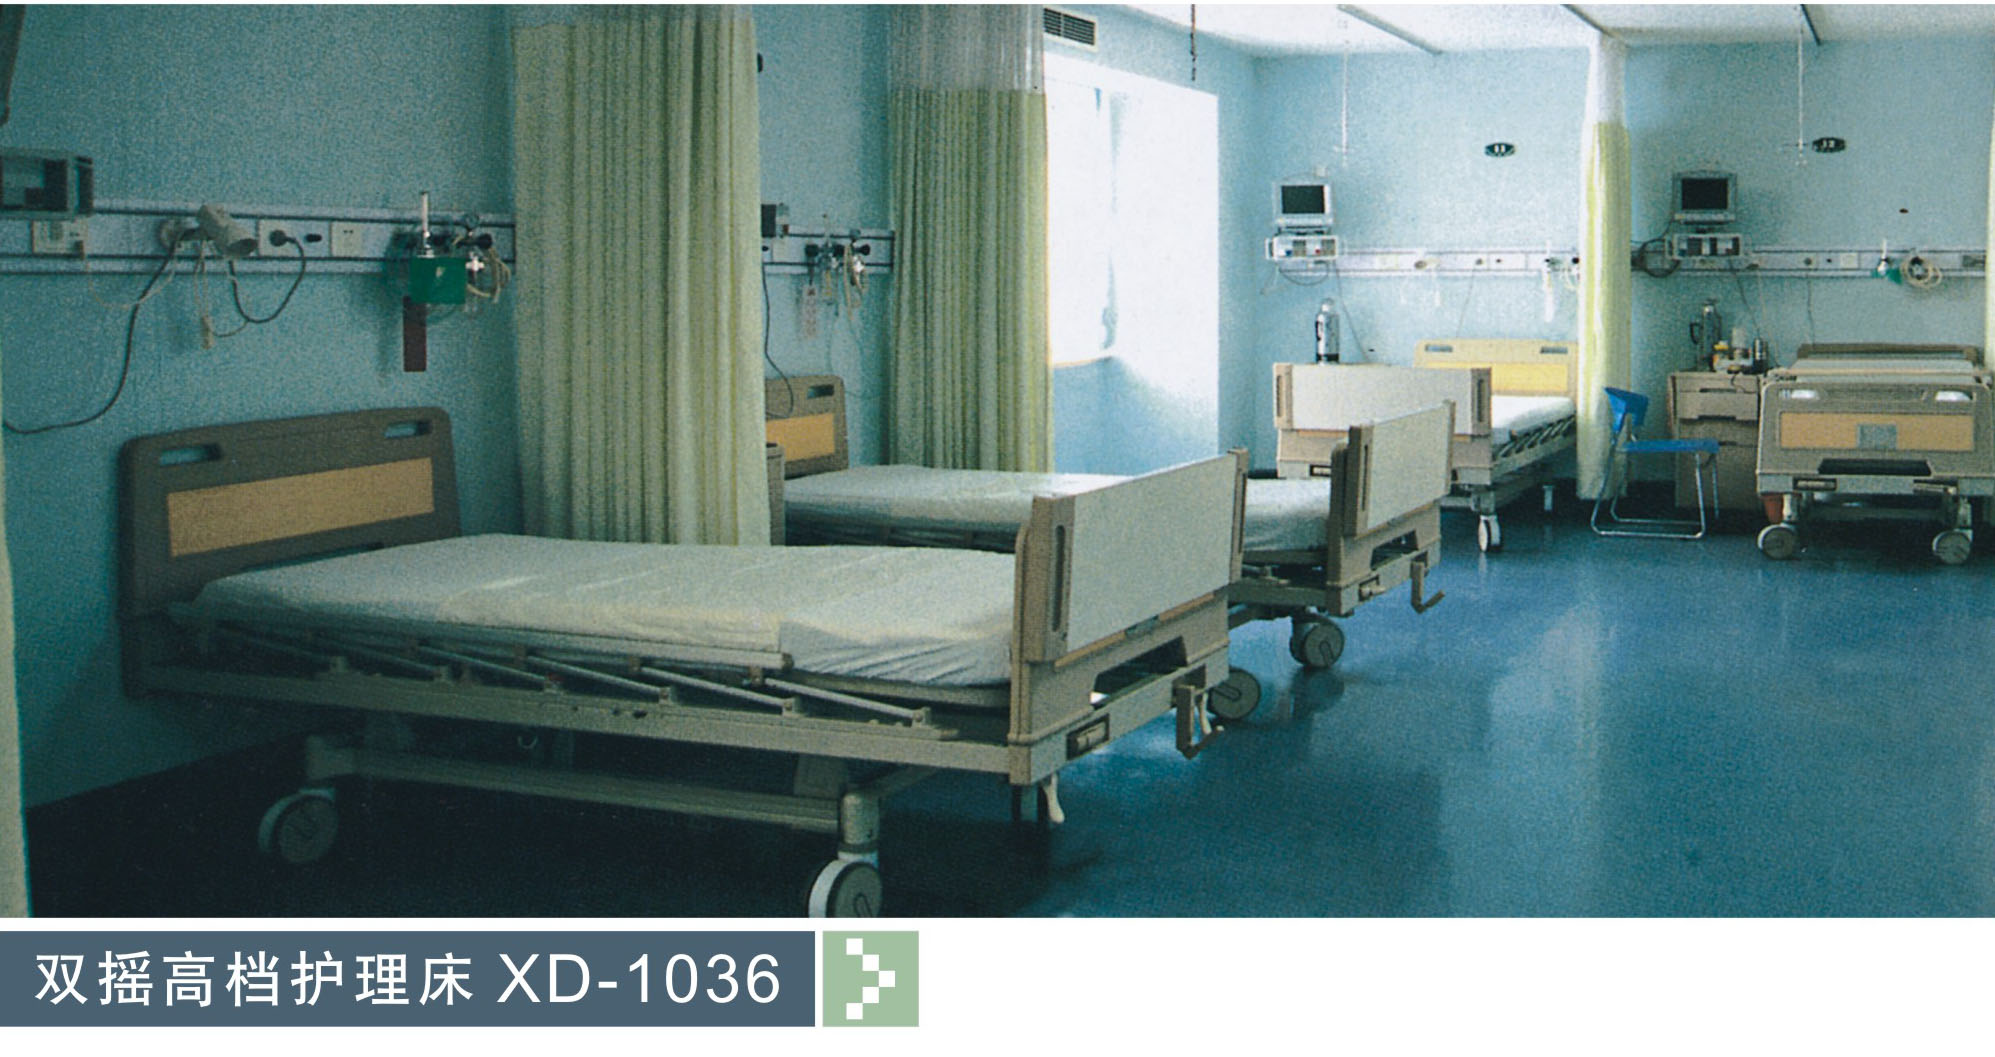 双摇高档护理床XD-1036